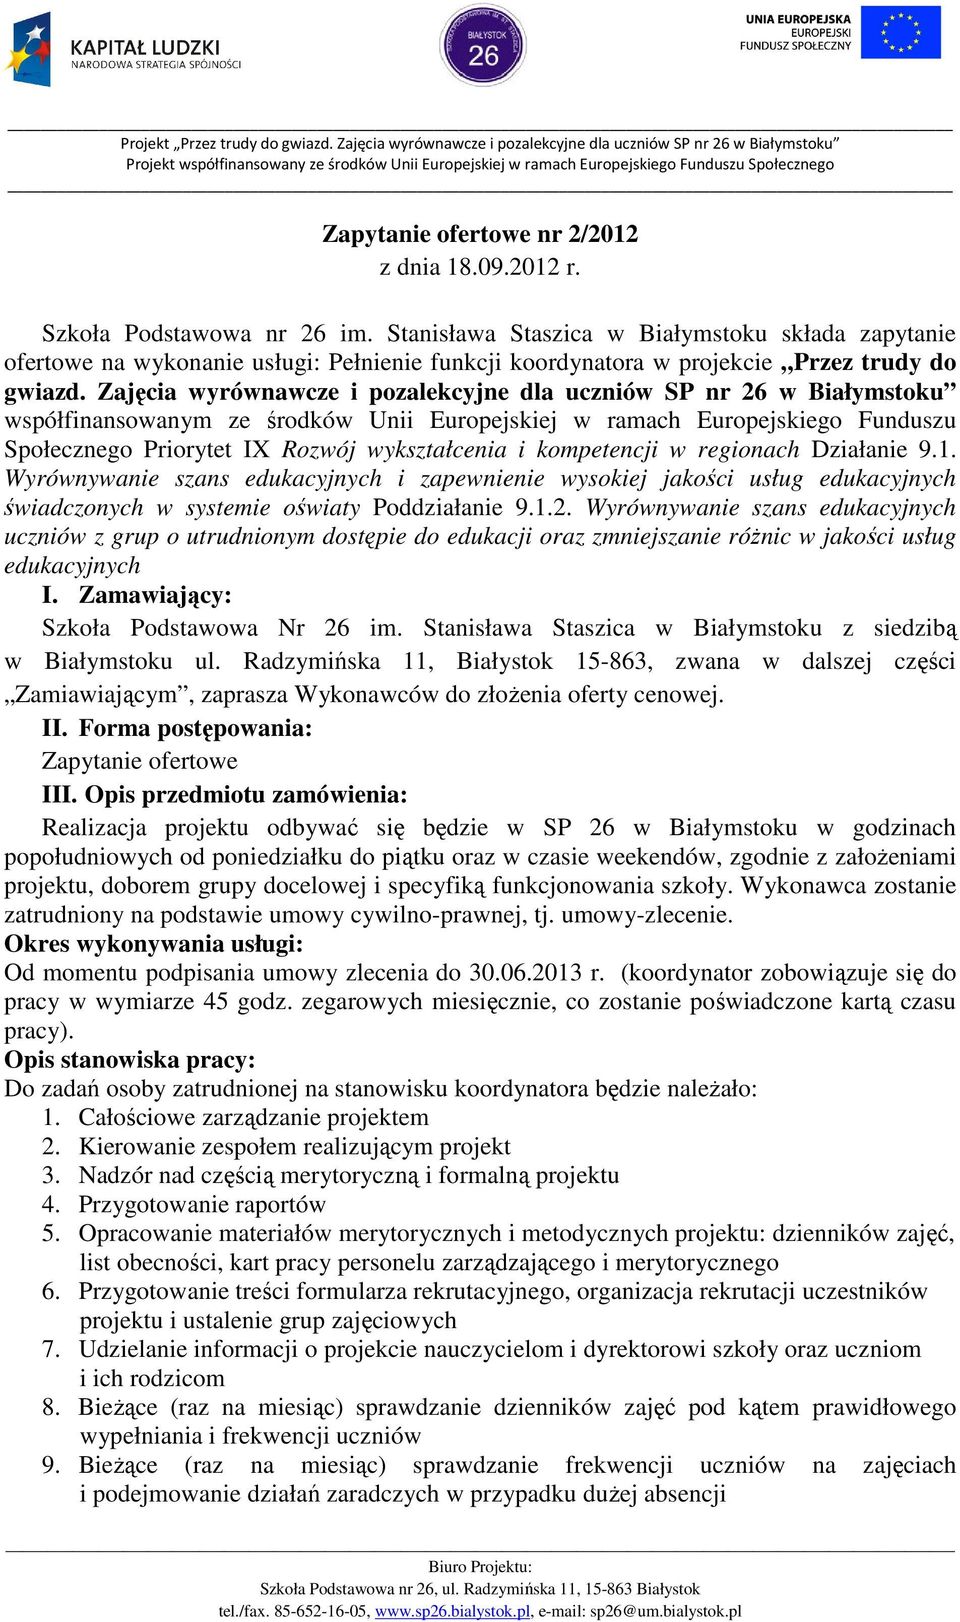 Zajęcia wyrównawcze i pozalekcyjne dla uczniów SP nr 26 w Białymstoku współfinansowanym ze środków Unii Europejskiej w ramach Europejskiego Funduszu Społecznego Priorytet IX Rozwój wykształcenia i